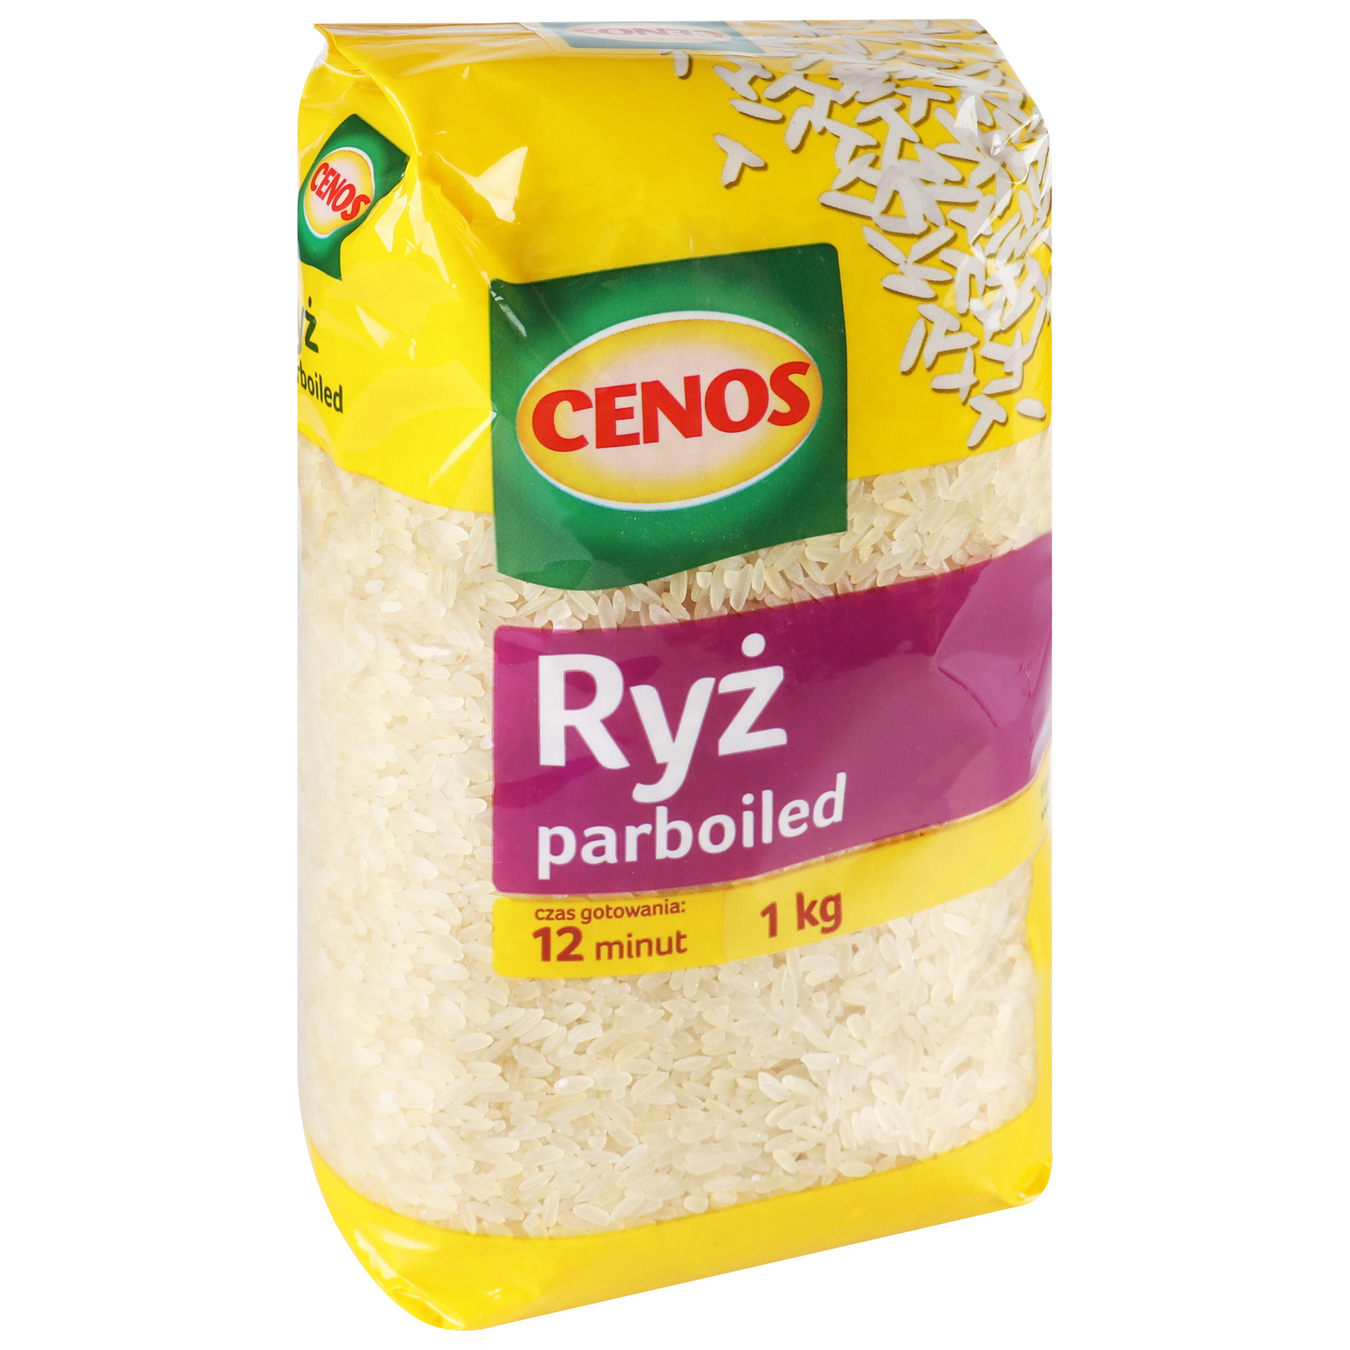 Cenos steamed rice 1 kg 2